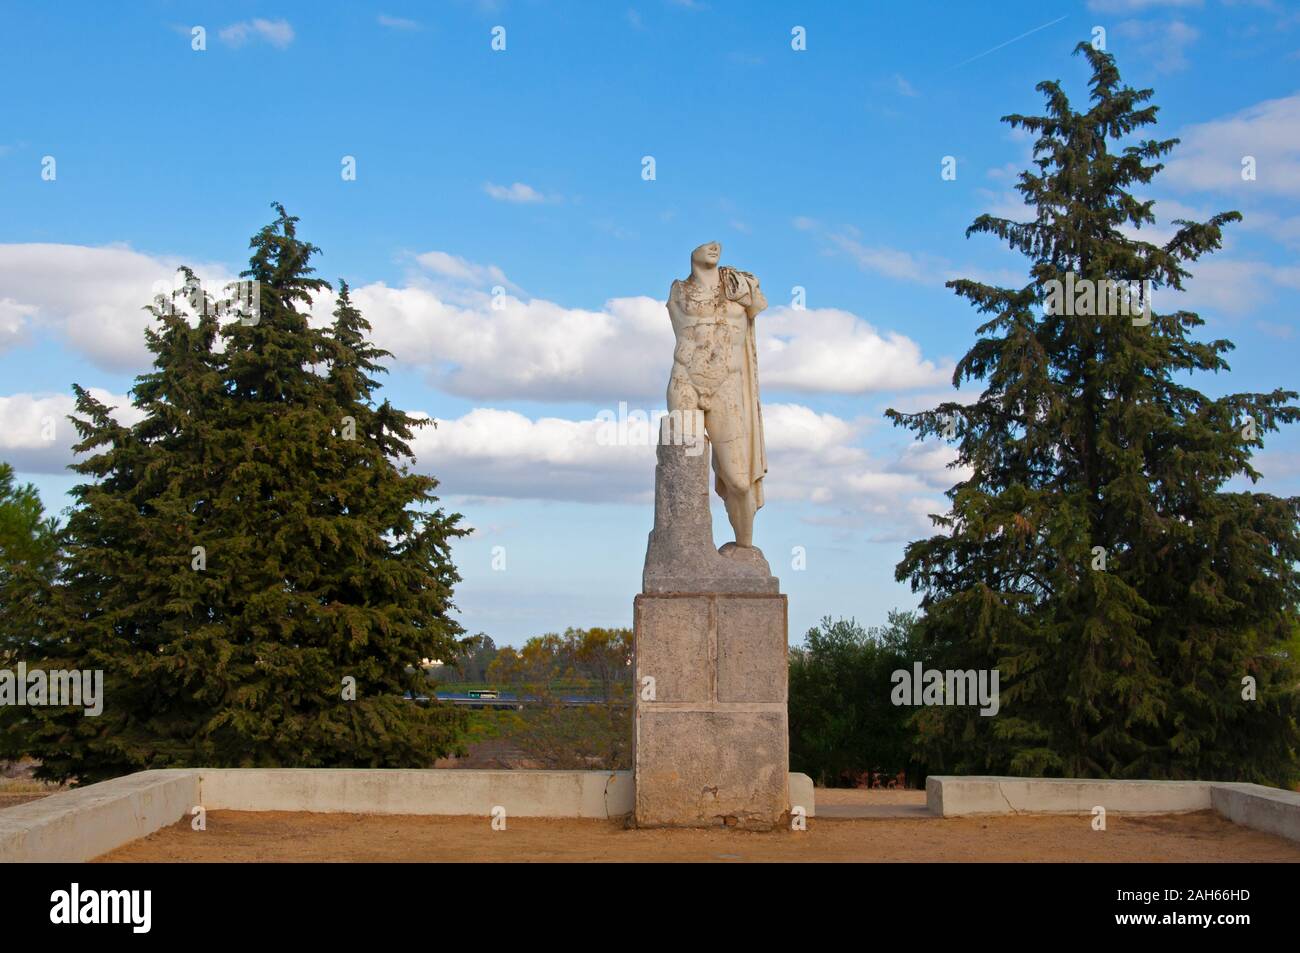 Antike Skulptur der Mann in der römischen Stadt Italica in Sevilla, Spanien. Grüne Bäume und blauer Himmel mit Wolken. Stockfoto